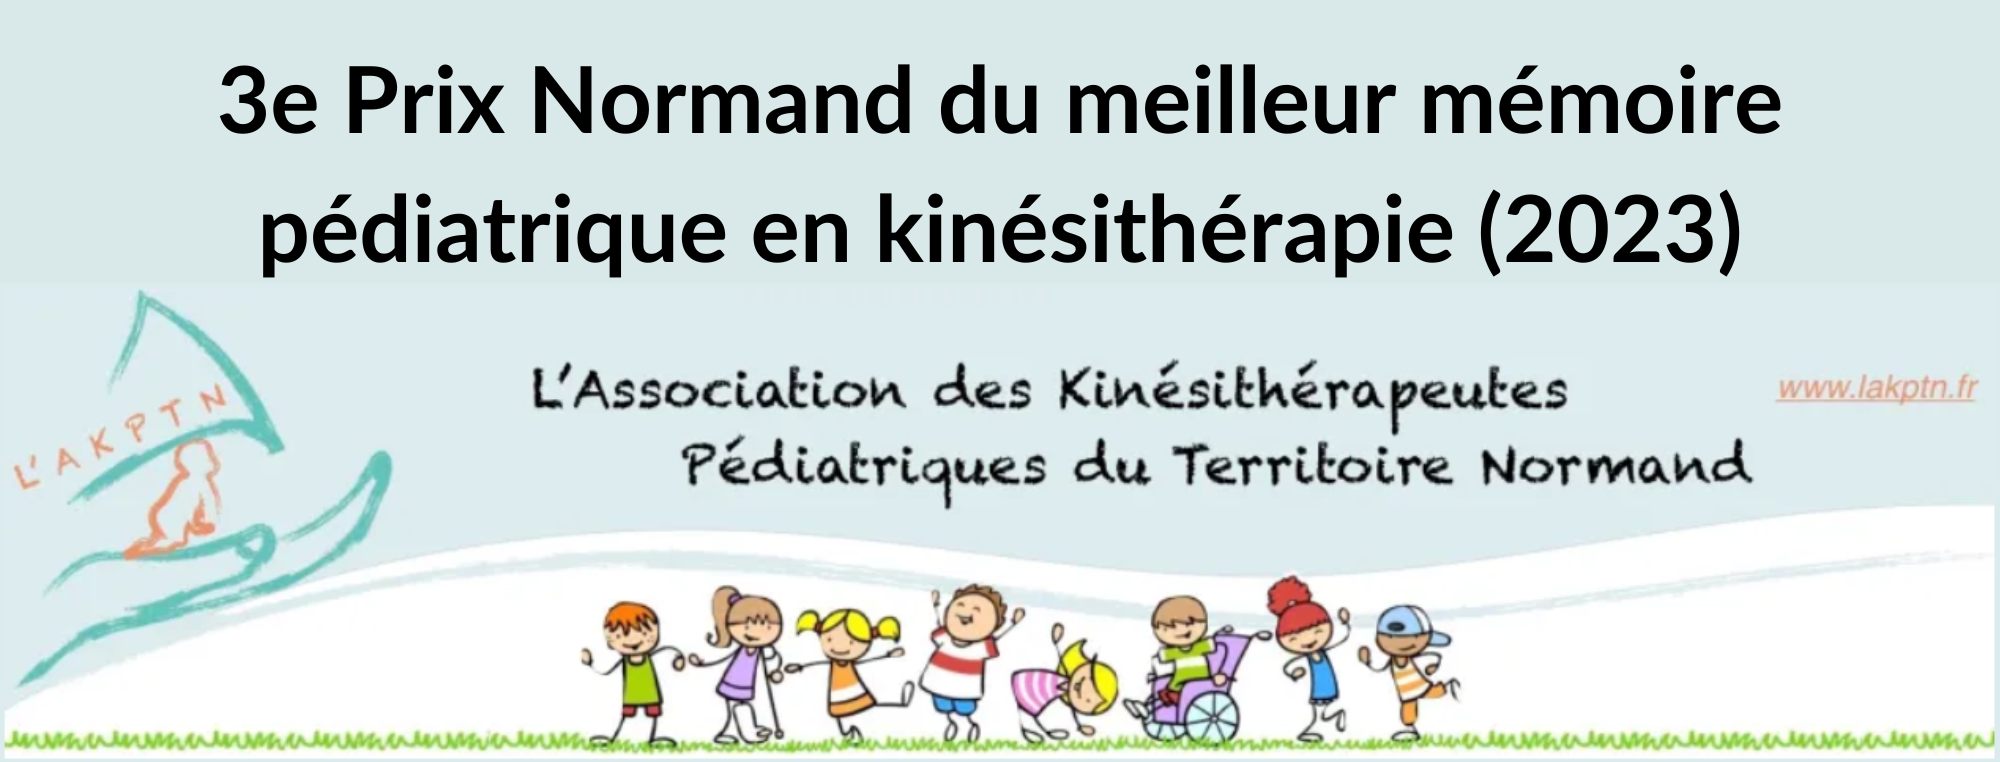 Pauline BELAIR, étudiante à l’IFMK d’Alençon est lauréate du Prix Normand du meilleur mémoire pédiatrique en kinésithérapie (édition 2023).